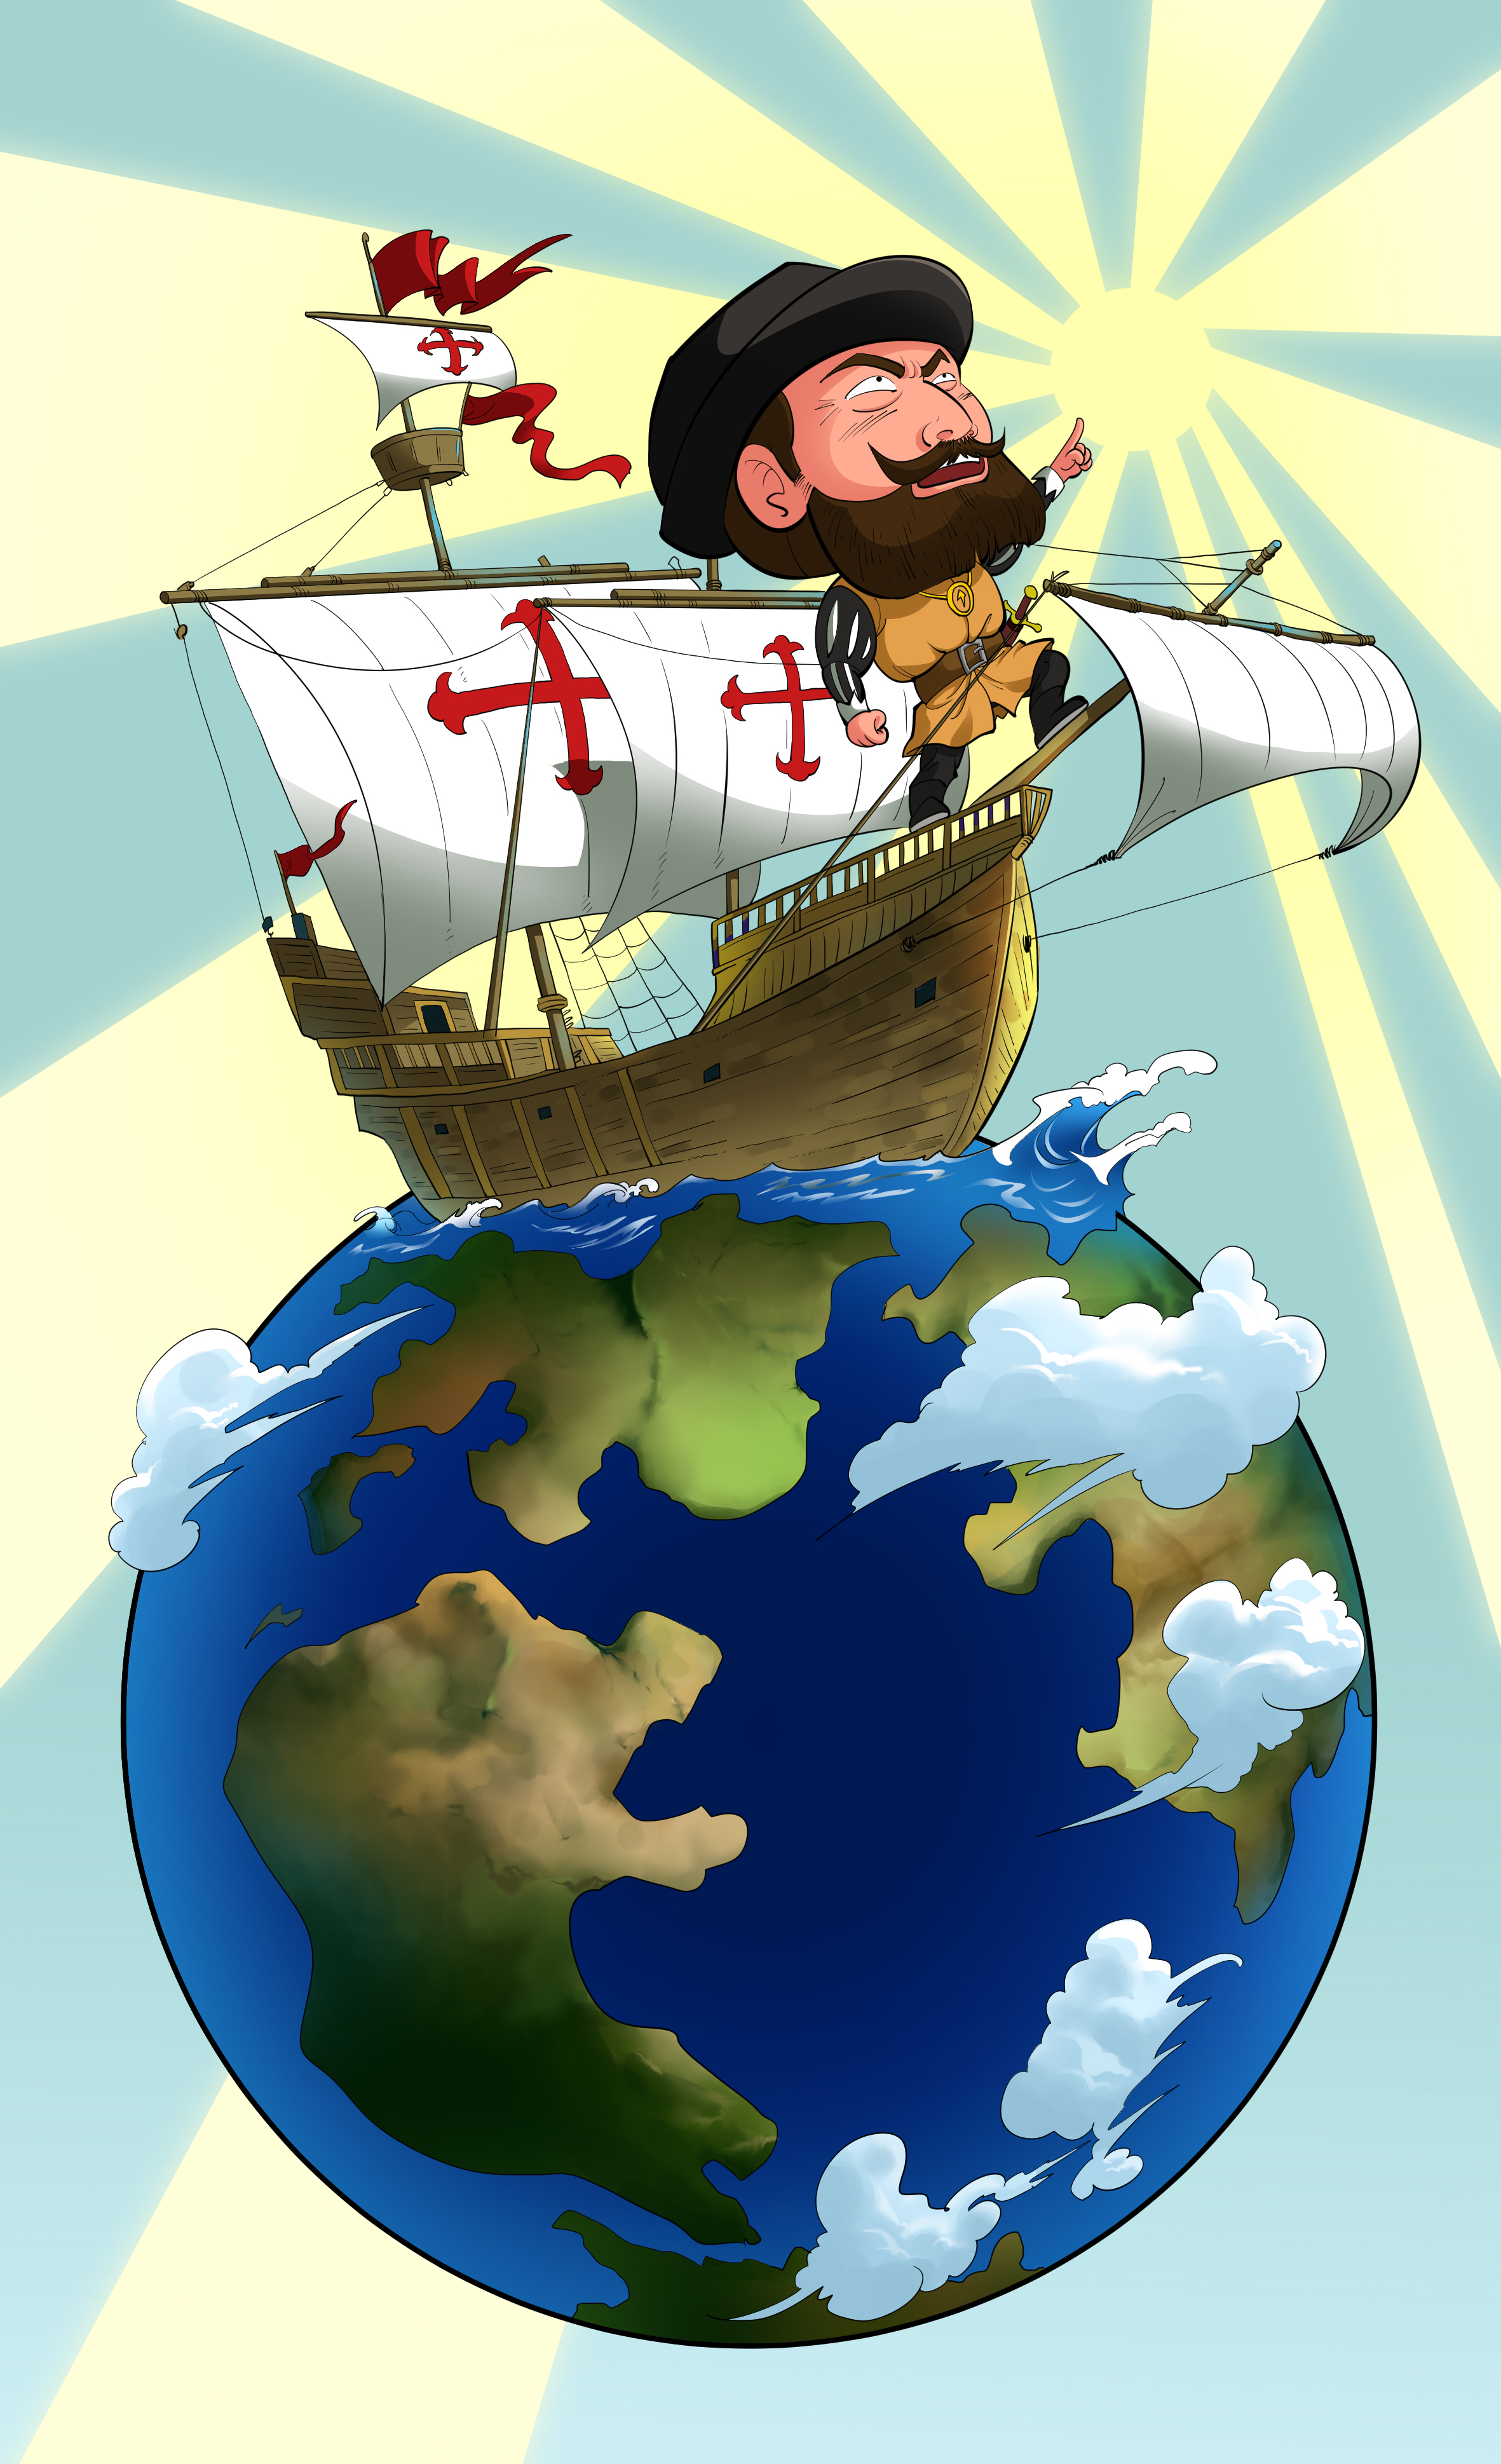 麦哲伦环球航行证明了地球是圆的,朝着一个方向走能回到原点吗?